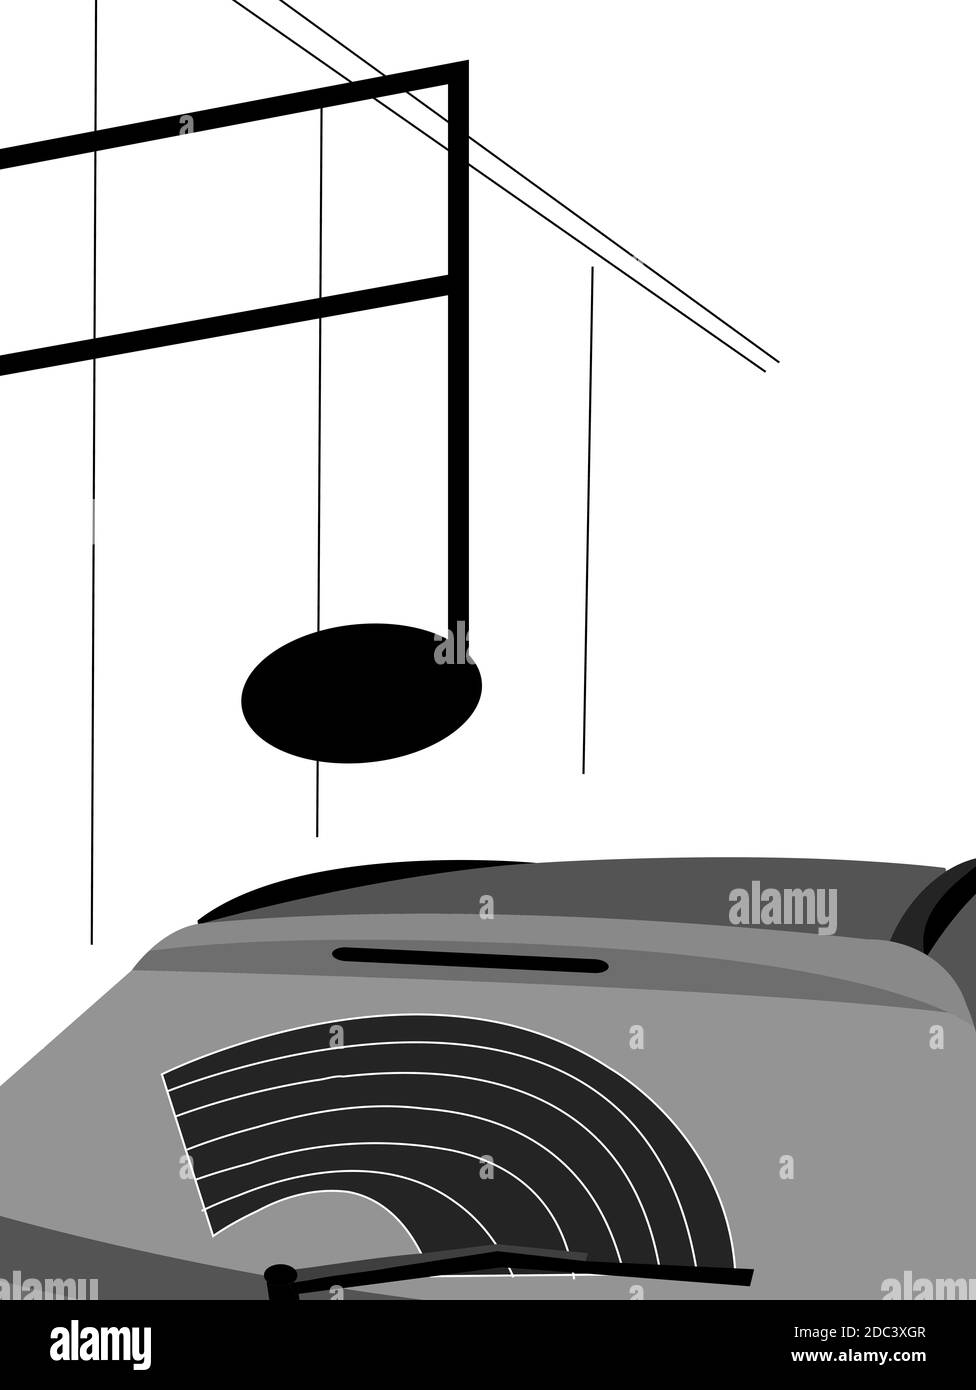 illustration d'une voiture non lavée qui ressemble à un gramophone jouant de la musique, isolée sur blanc Banque D'Images